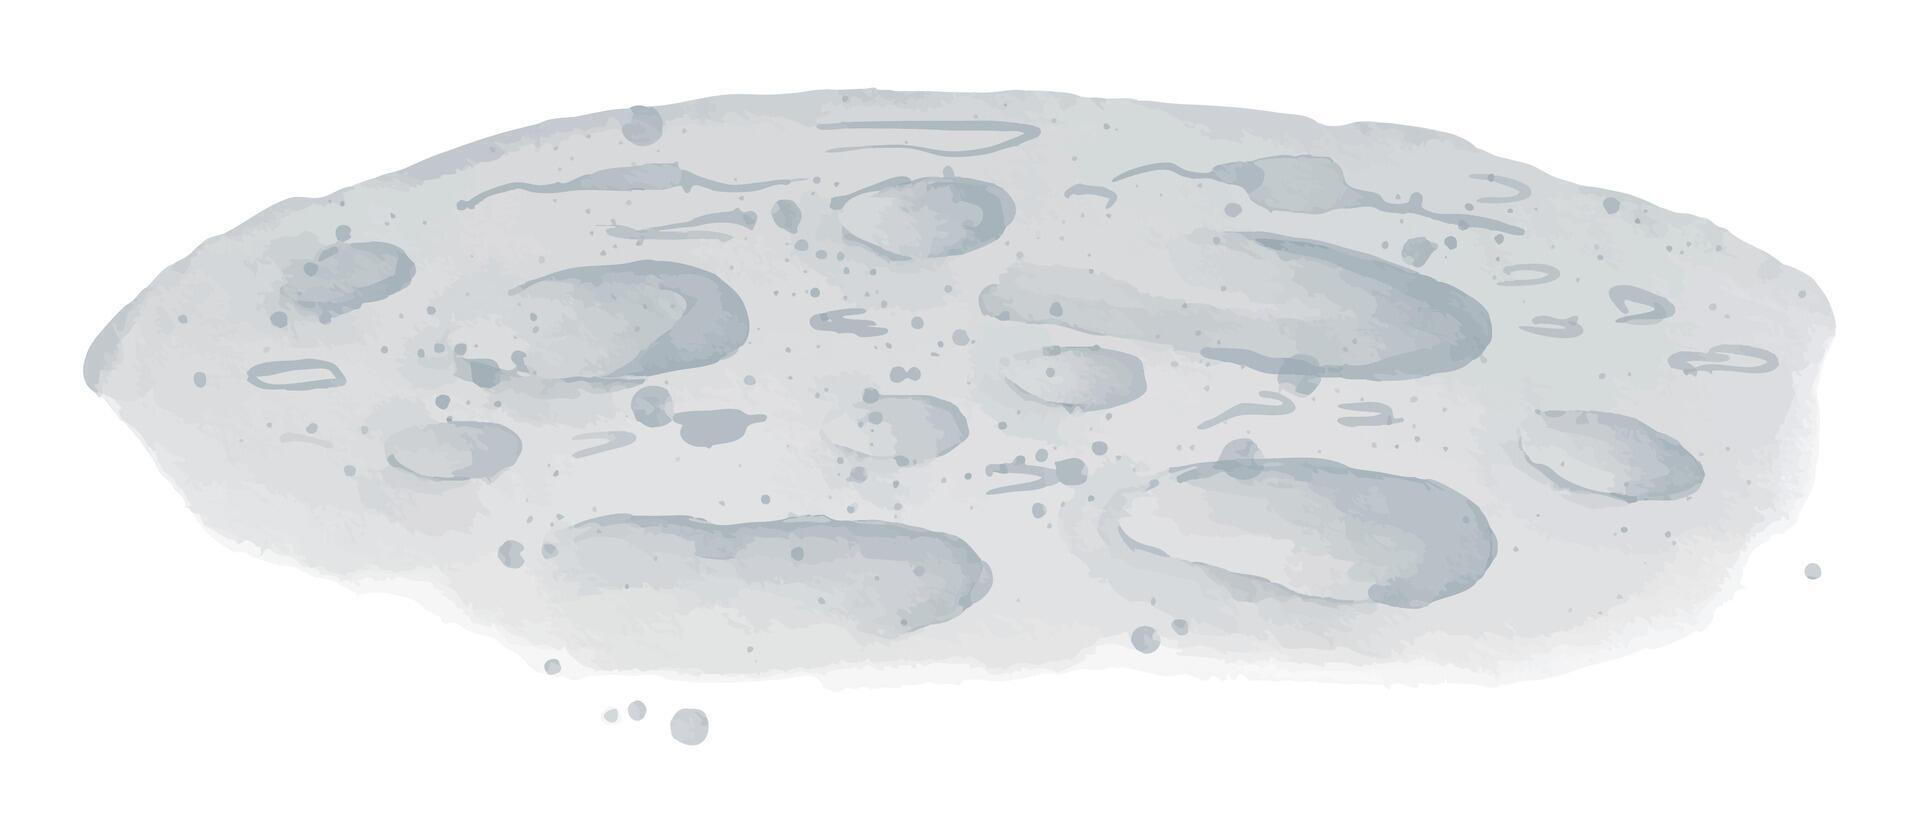 maan oppervlakte waterverf illustratie. hand- getrokken schetsen van planeet met kraters in licht pastel blauw kleuren Aan geïsoleerd achtergrond. tekening van luna in s ruimte voor baby ontwerp. futuristische landschap vector